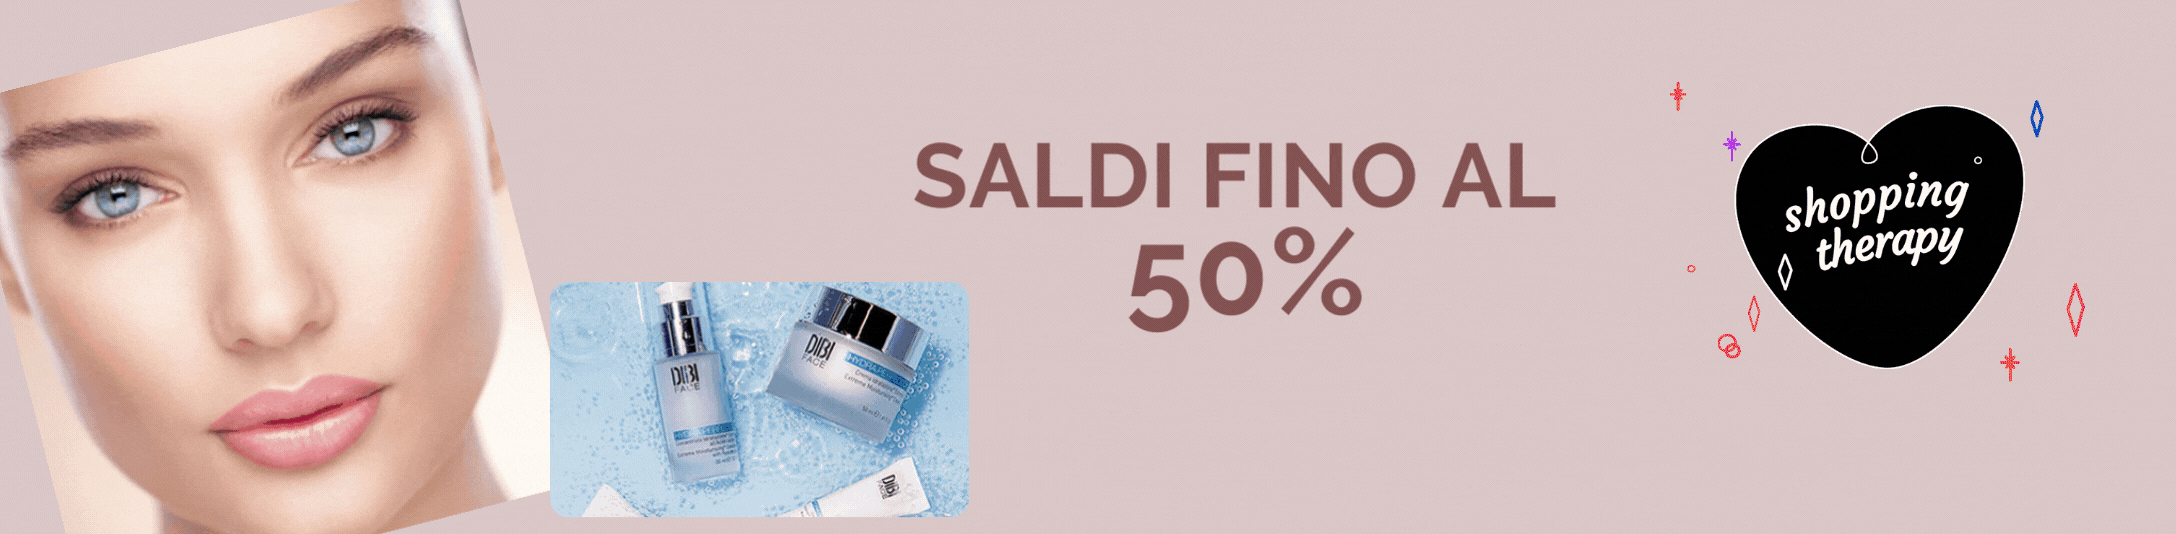 SALDI - SCONTI FINO AL 50%